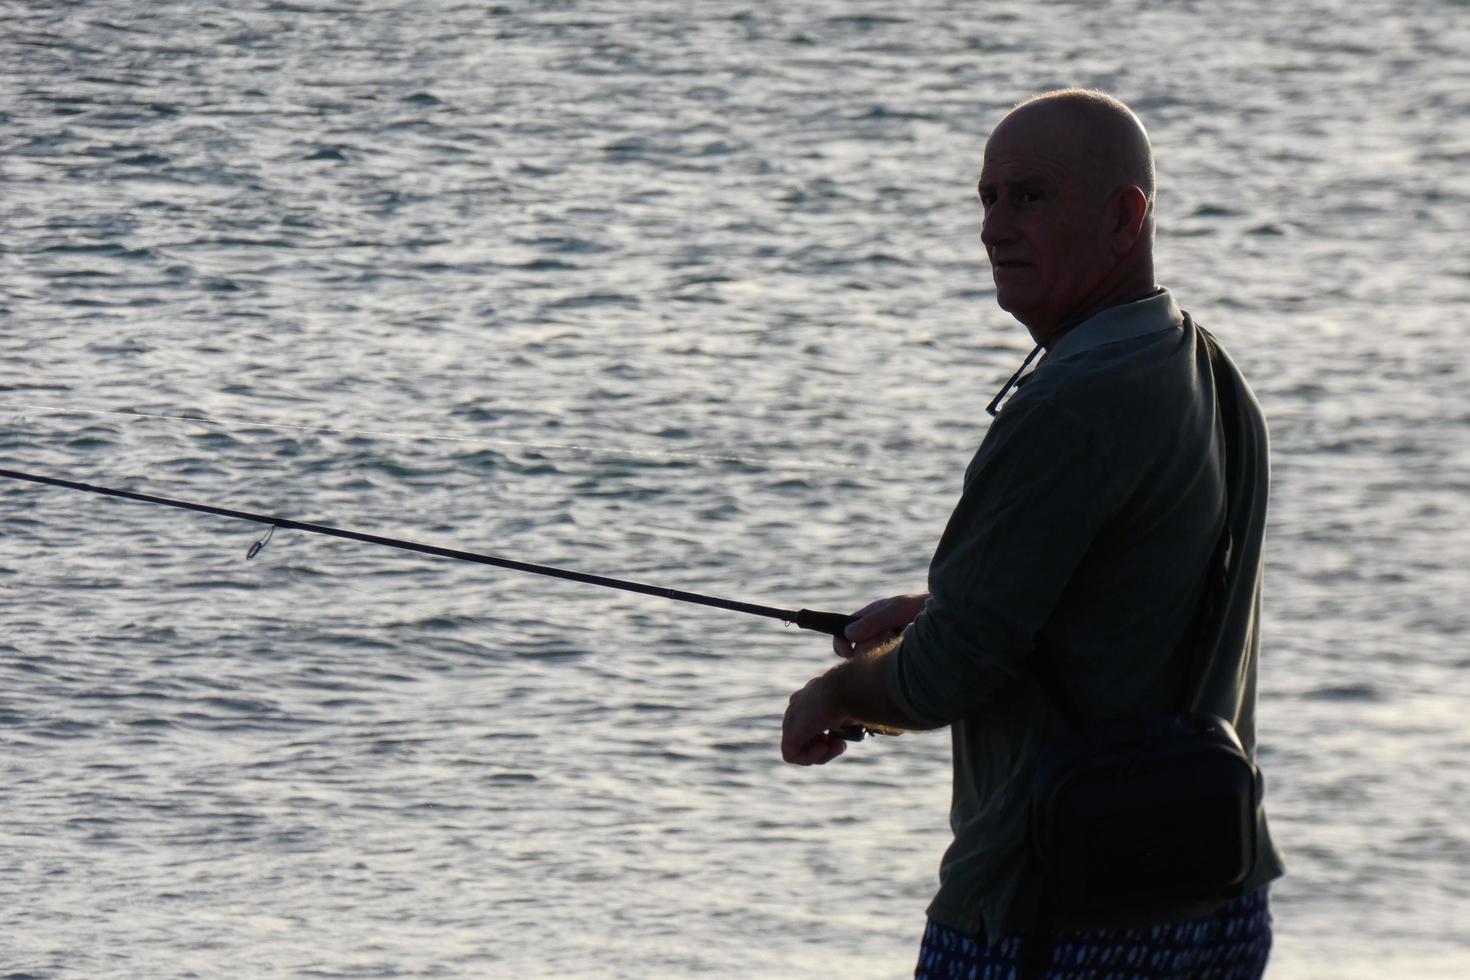 pesca en la orilla de la playa, pesca tradicional como afición 15898256  Foto de stock en Vecteezy